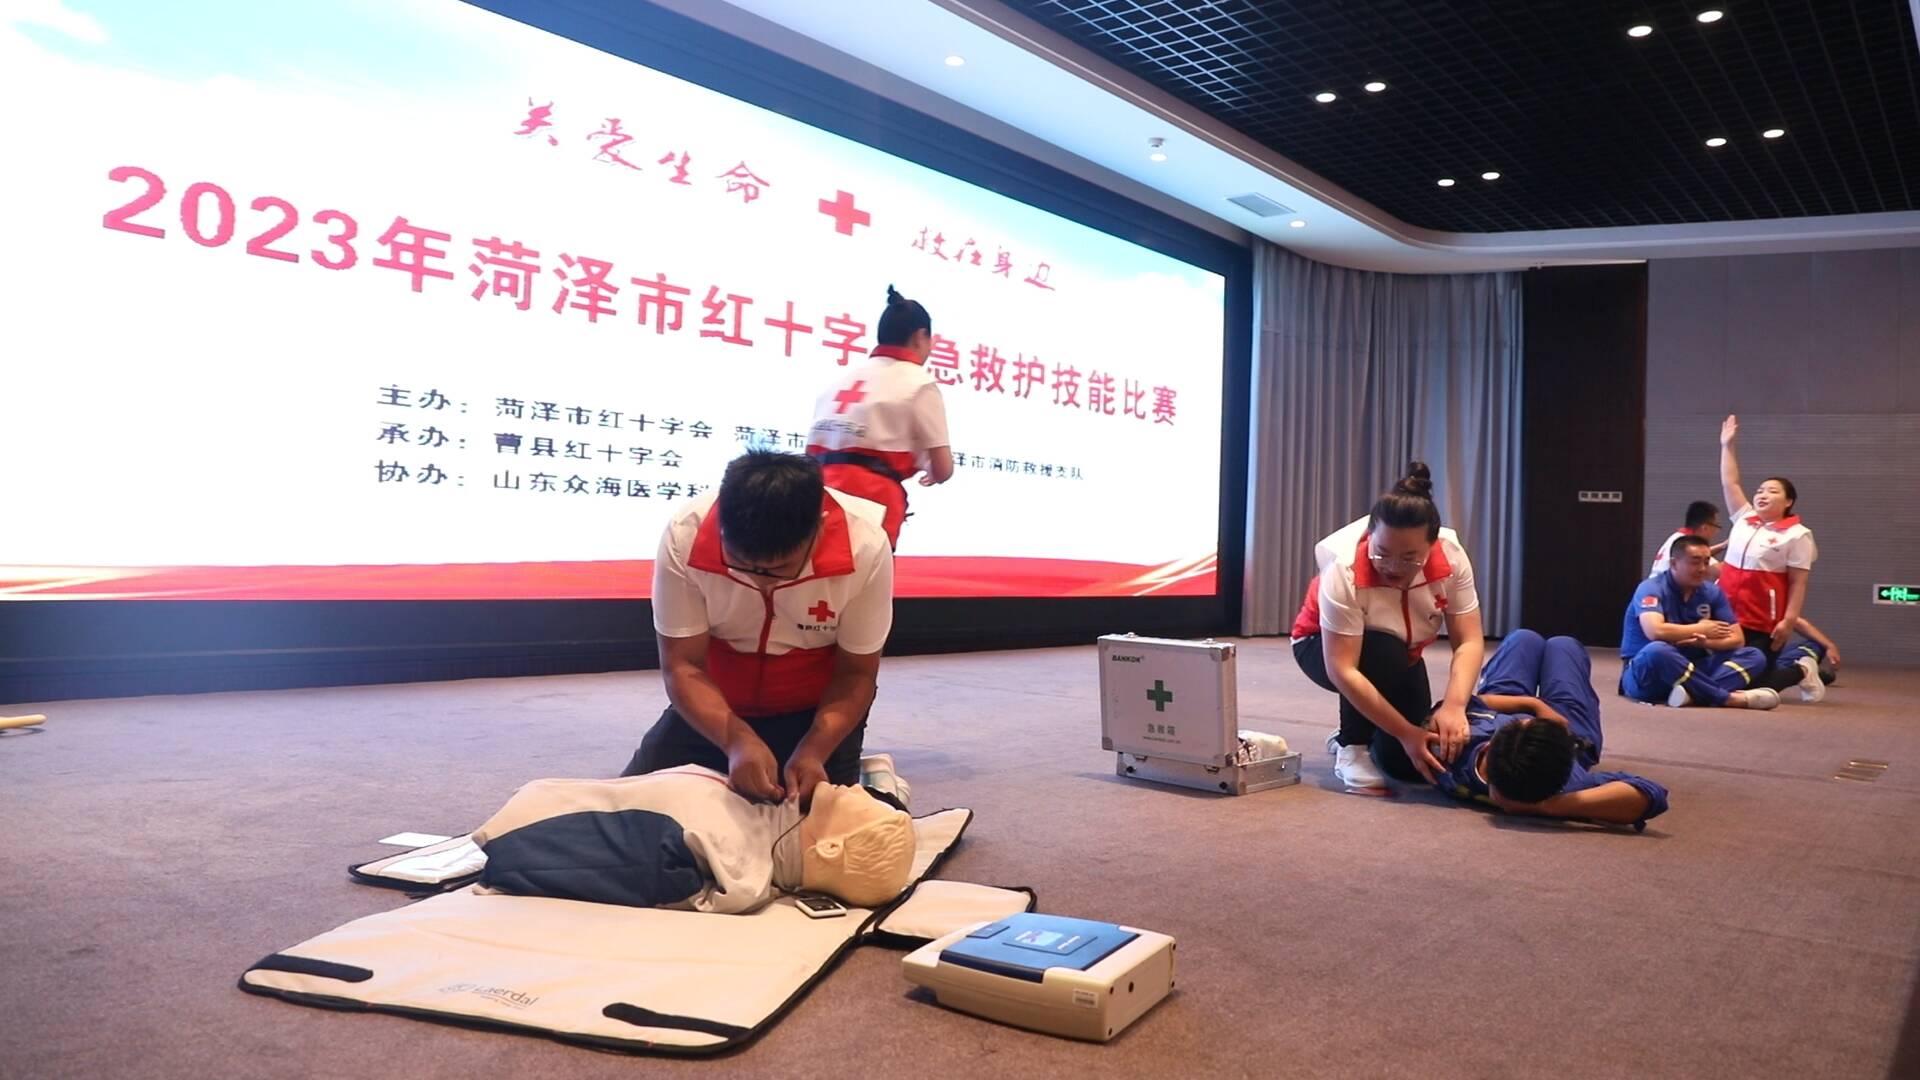 2023年菏泽市红十字应急救护大赛在曹县举办